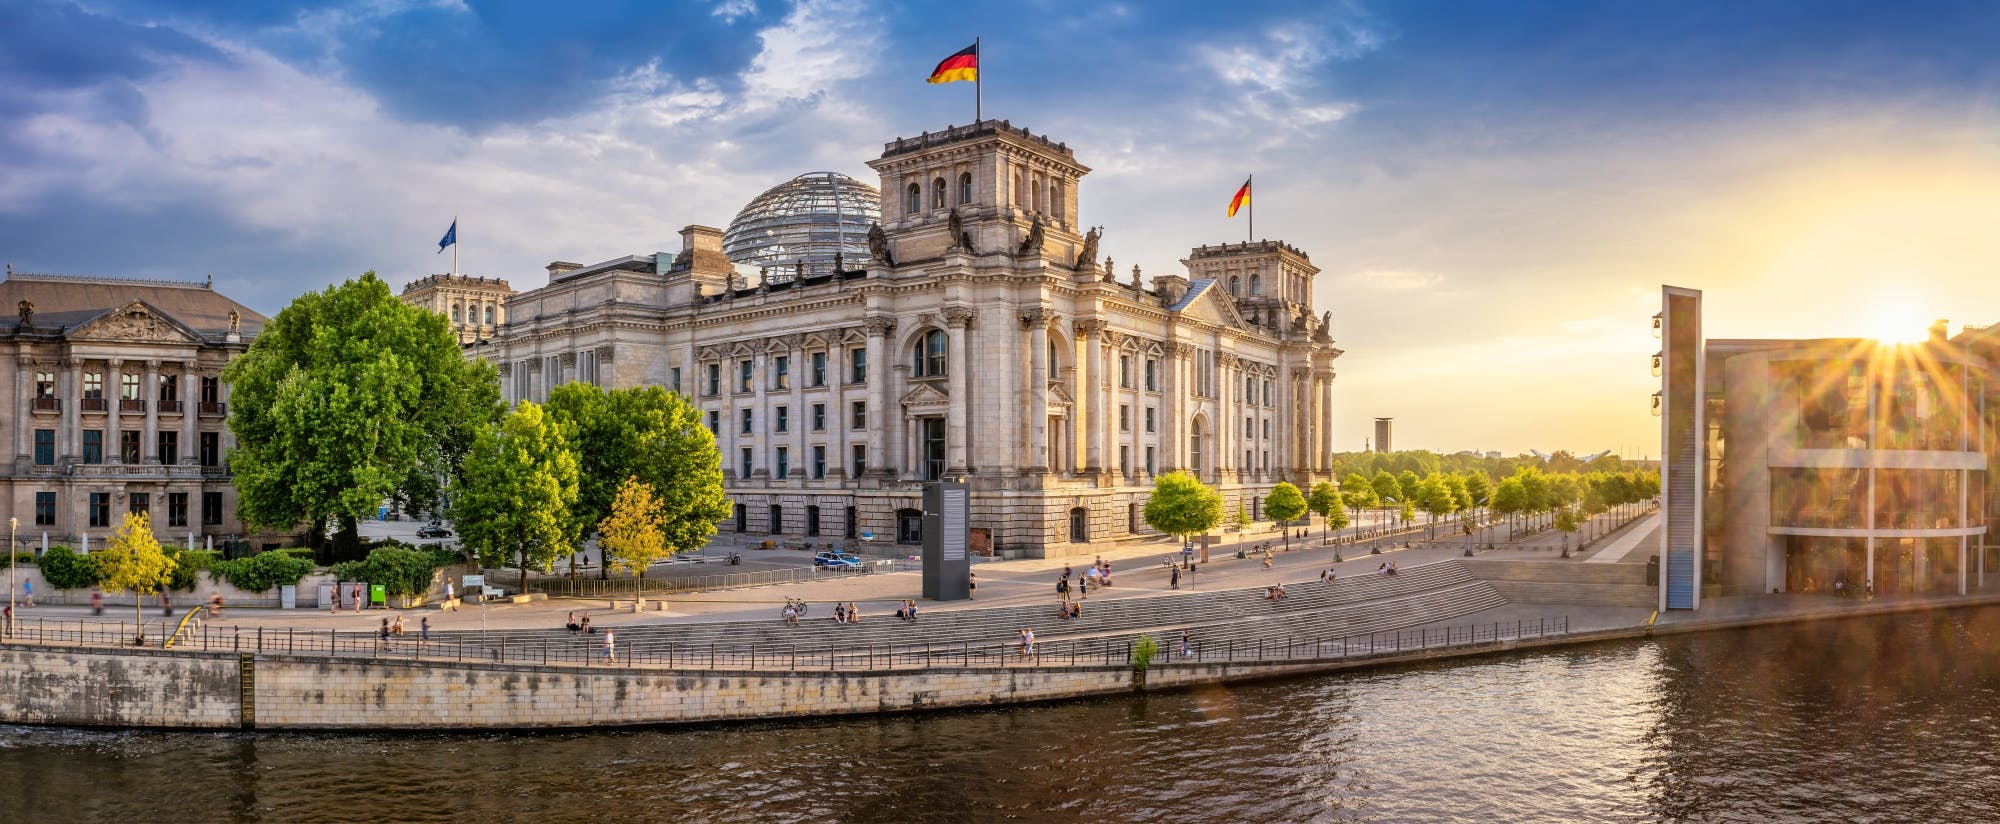 Führung durch den Berliner Reichstag in englischer Sprache mit Besichtigung des Gebäudes